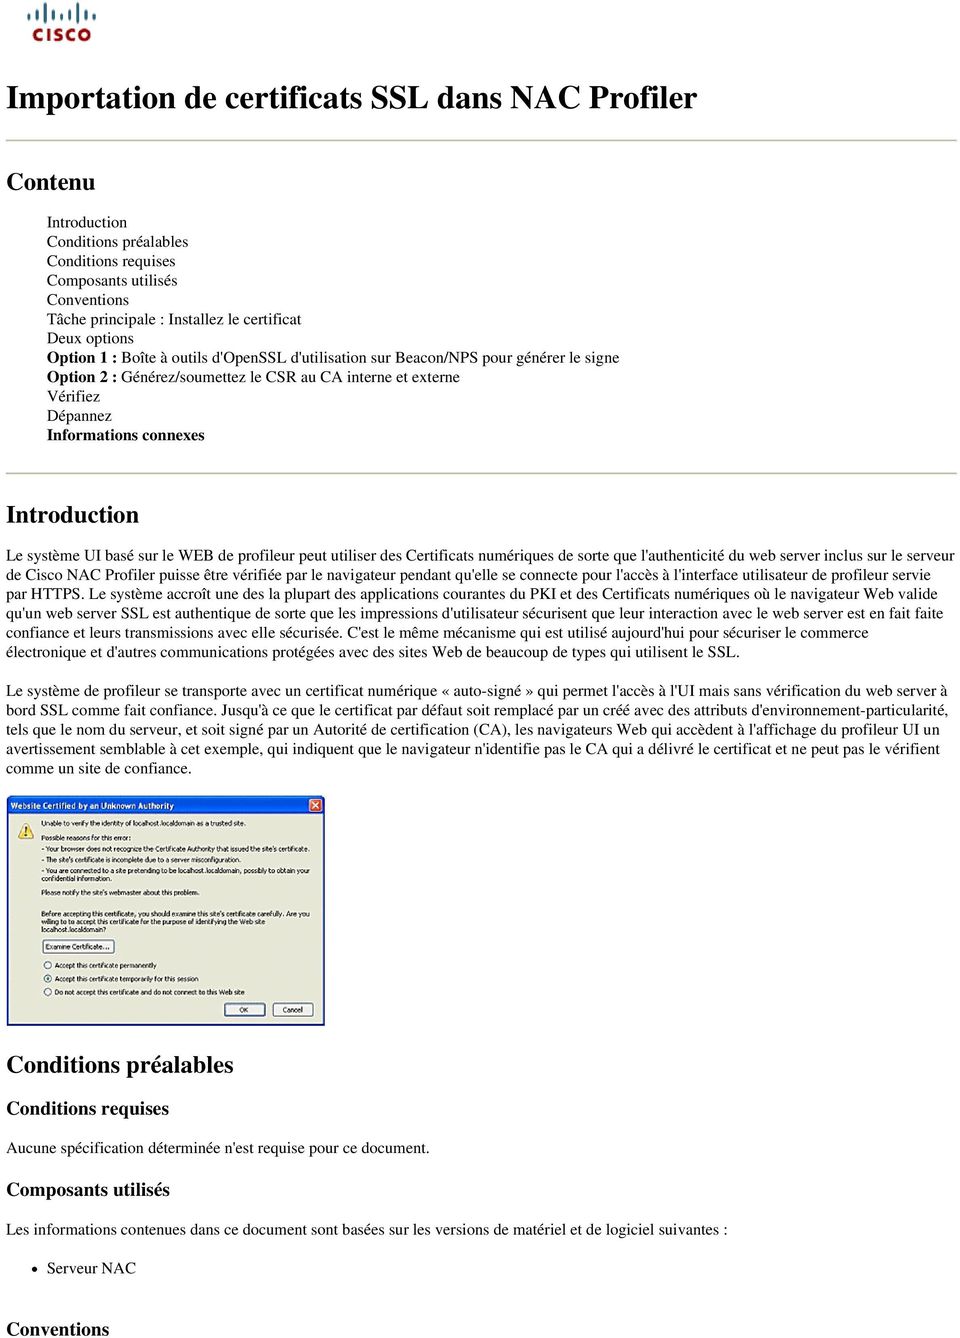 Introduction Le système UI basé sur le WEB de profileur peut utiliser des Certificats numériques de sorte que l'authenticité du web server inclus sur le serveur de Cisco NAC Profiler puisse être